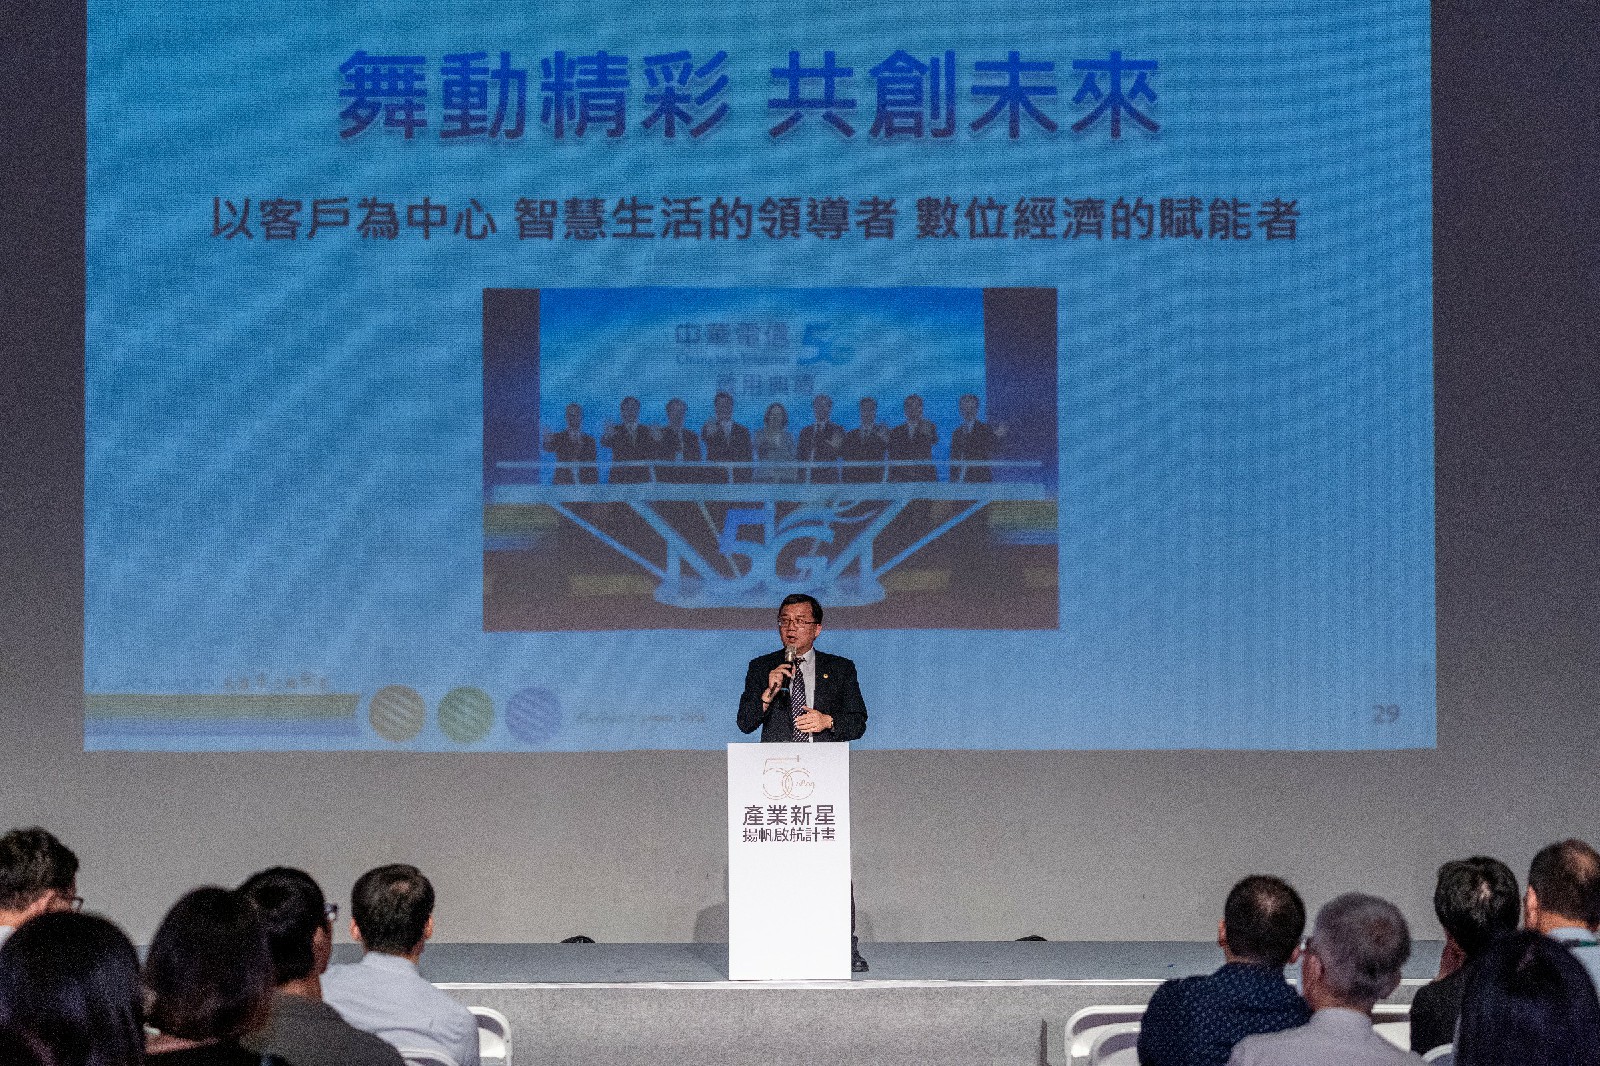 中華電信數據分公司林昭陽總經理主講迎向5G新時代共創產業未來